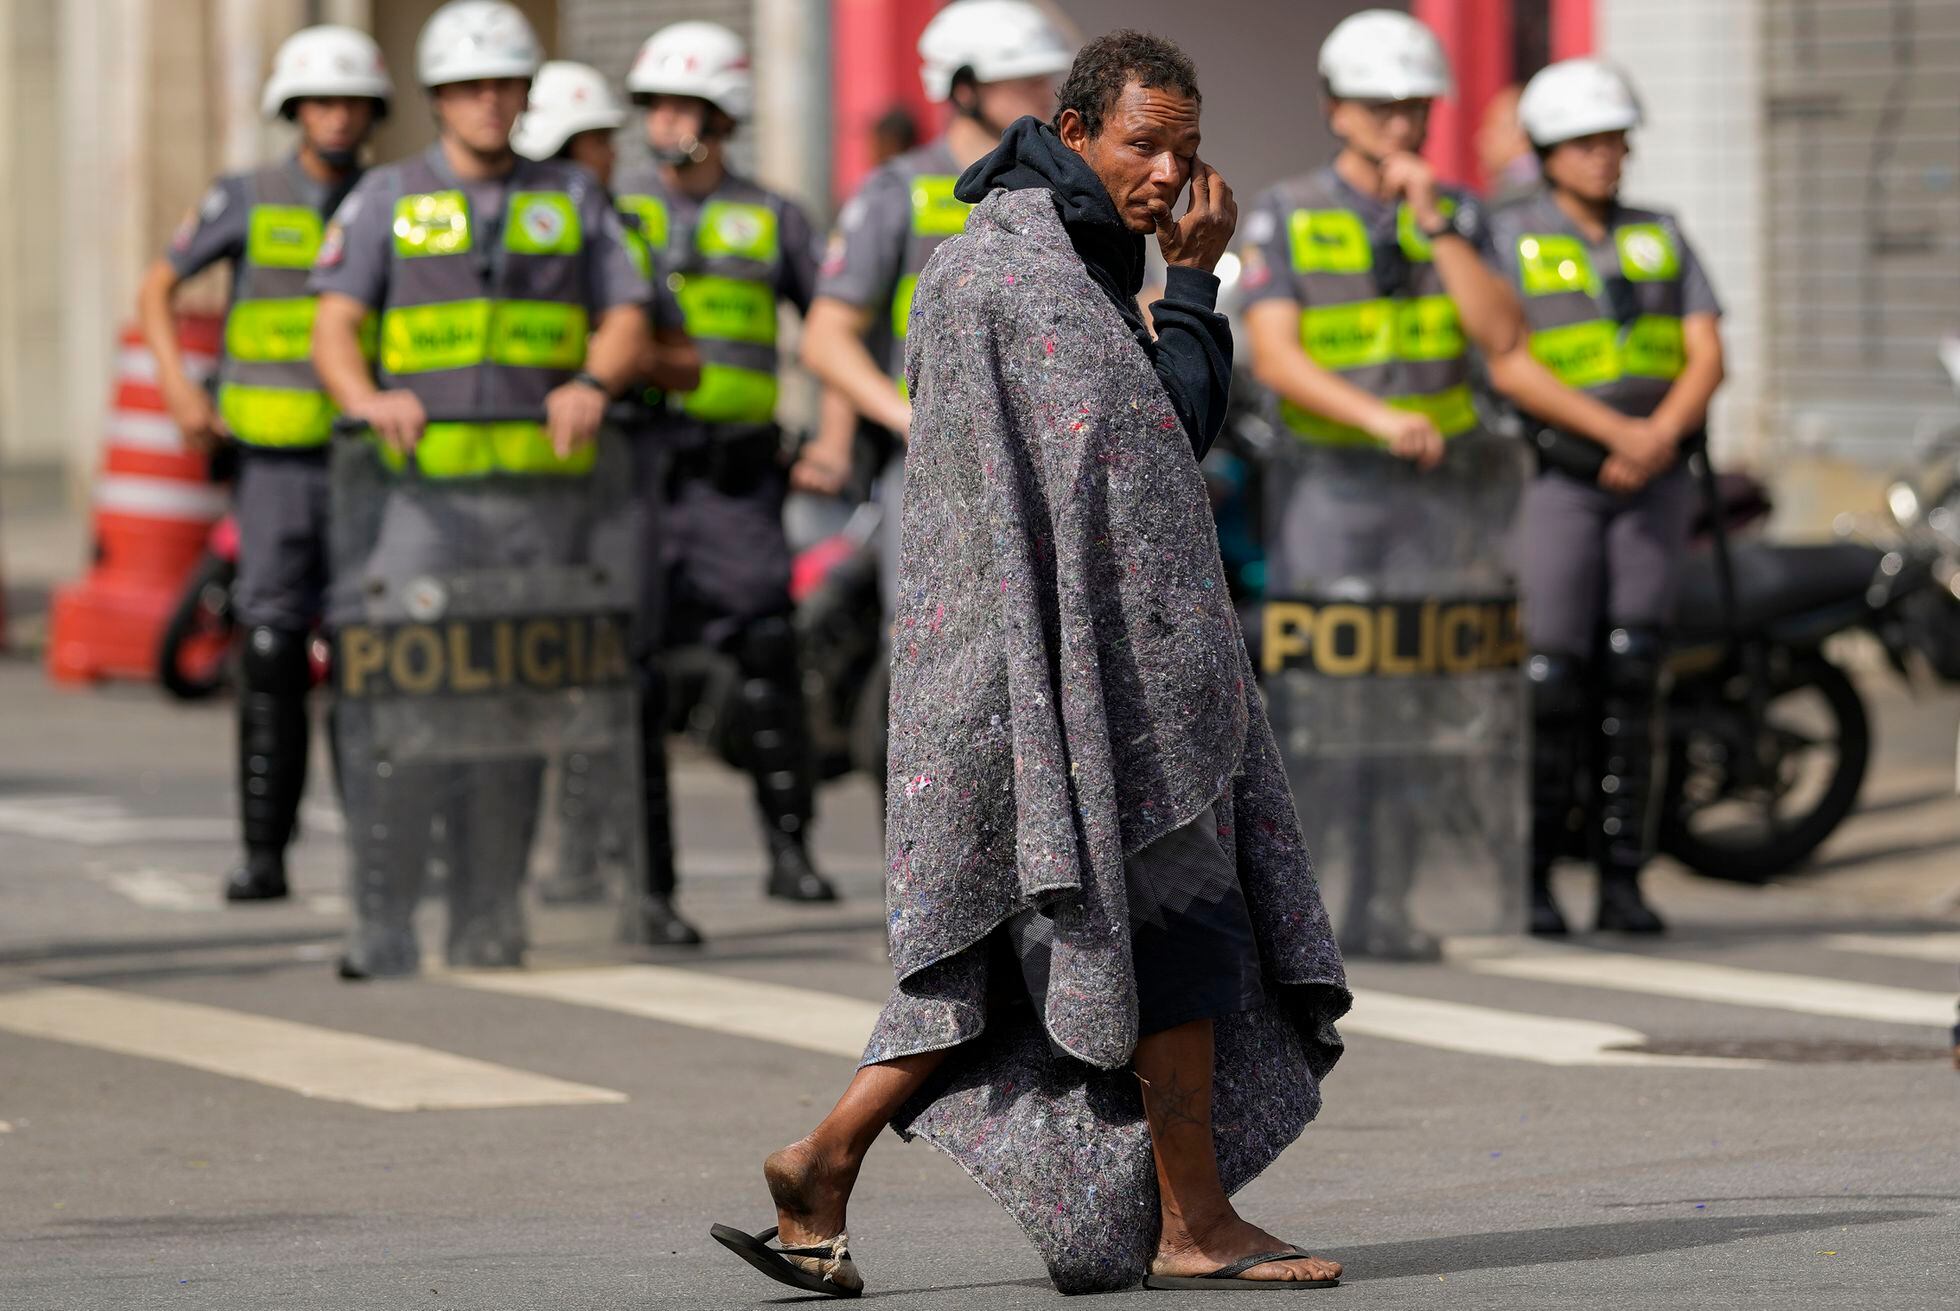 Un hombre que vivía Cracolandia, situado en la plaza Princesa Isabel, cruza la calle frente a las fuerzas policiales, el 11 de mayo de 2022.